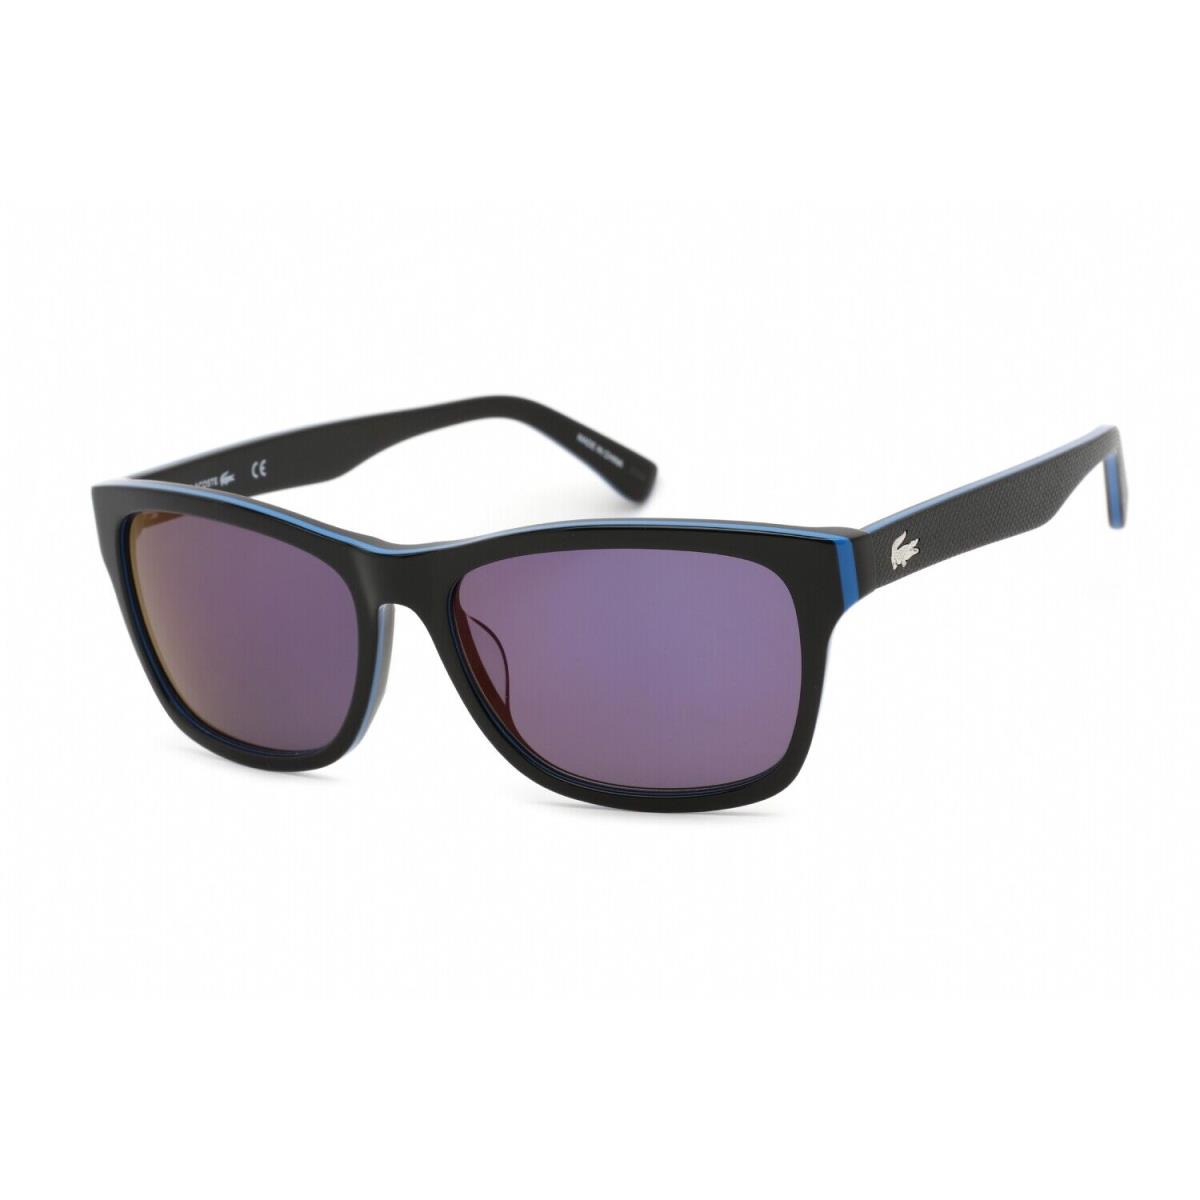 Lacoste L683S-006-55 Sunglasses Size 55mm 140mm 16mm Black Men